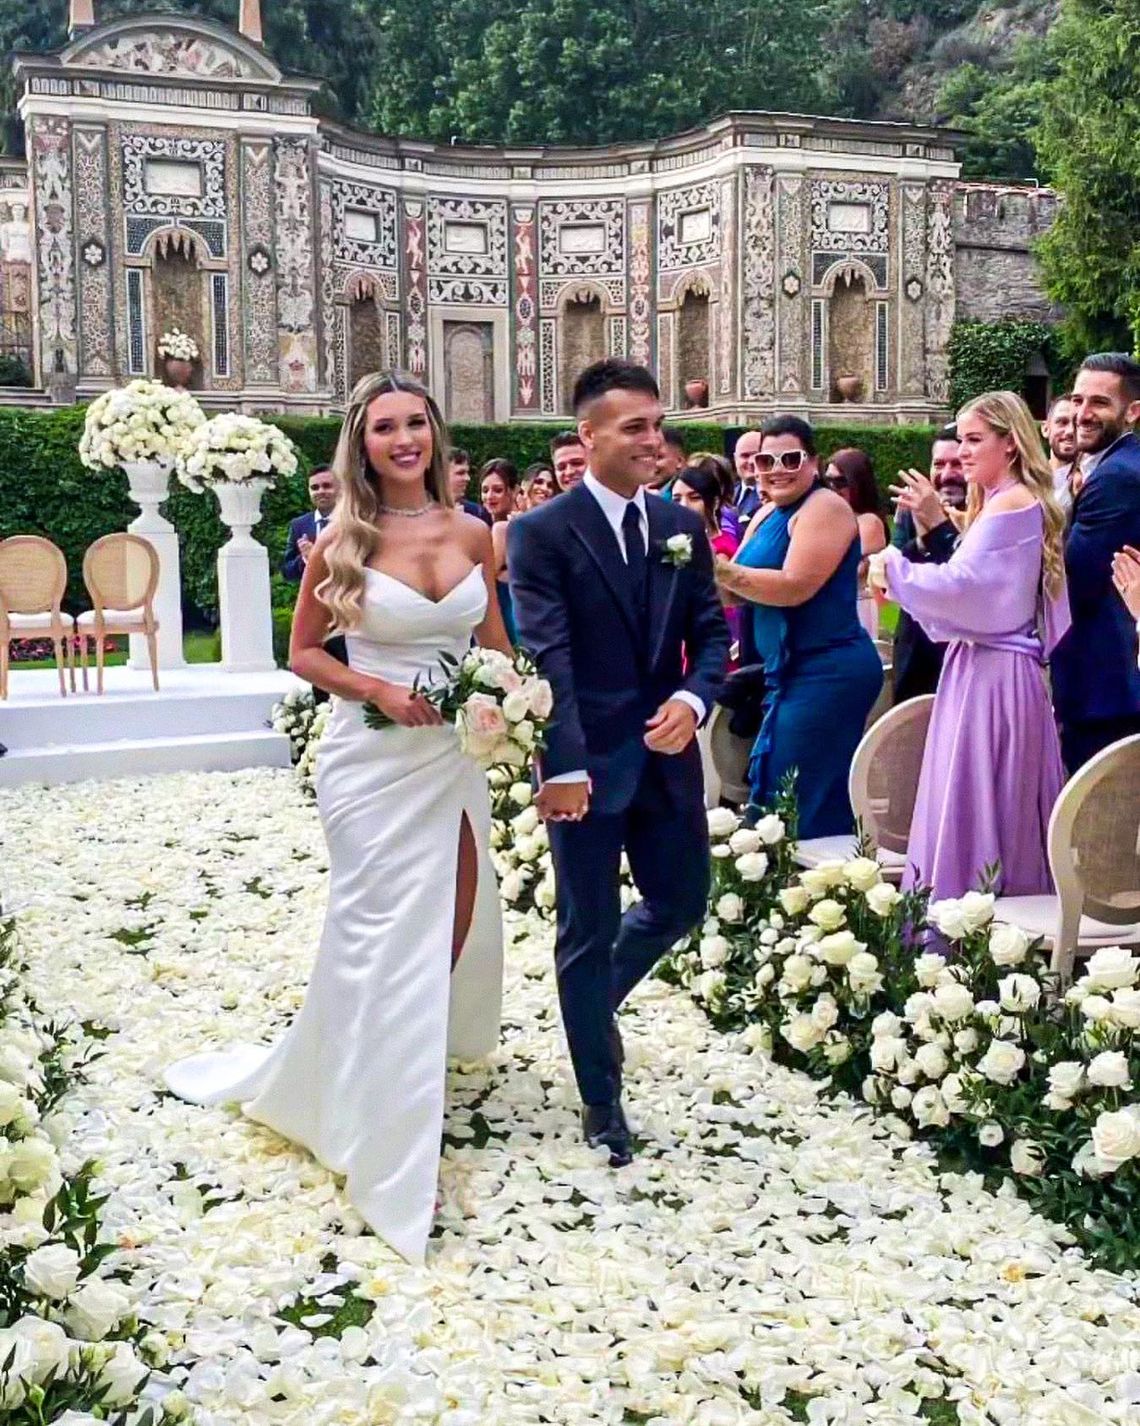 El casamiento de Lautaro Martínez. 